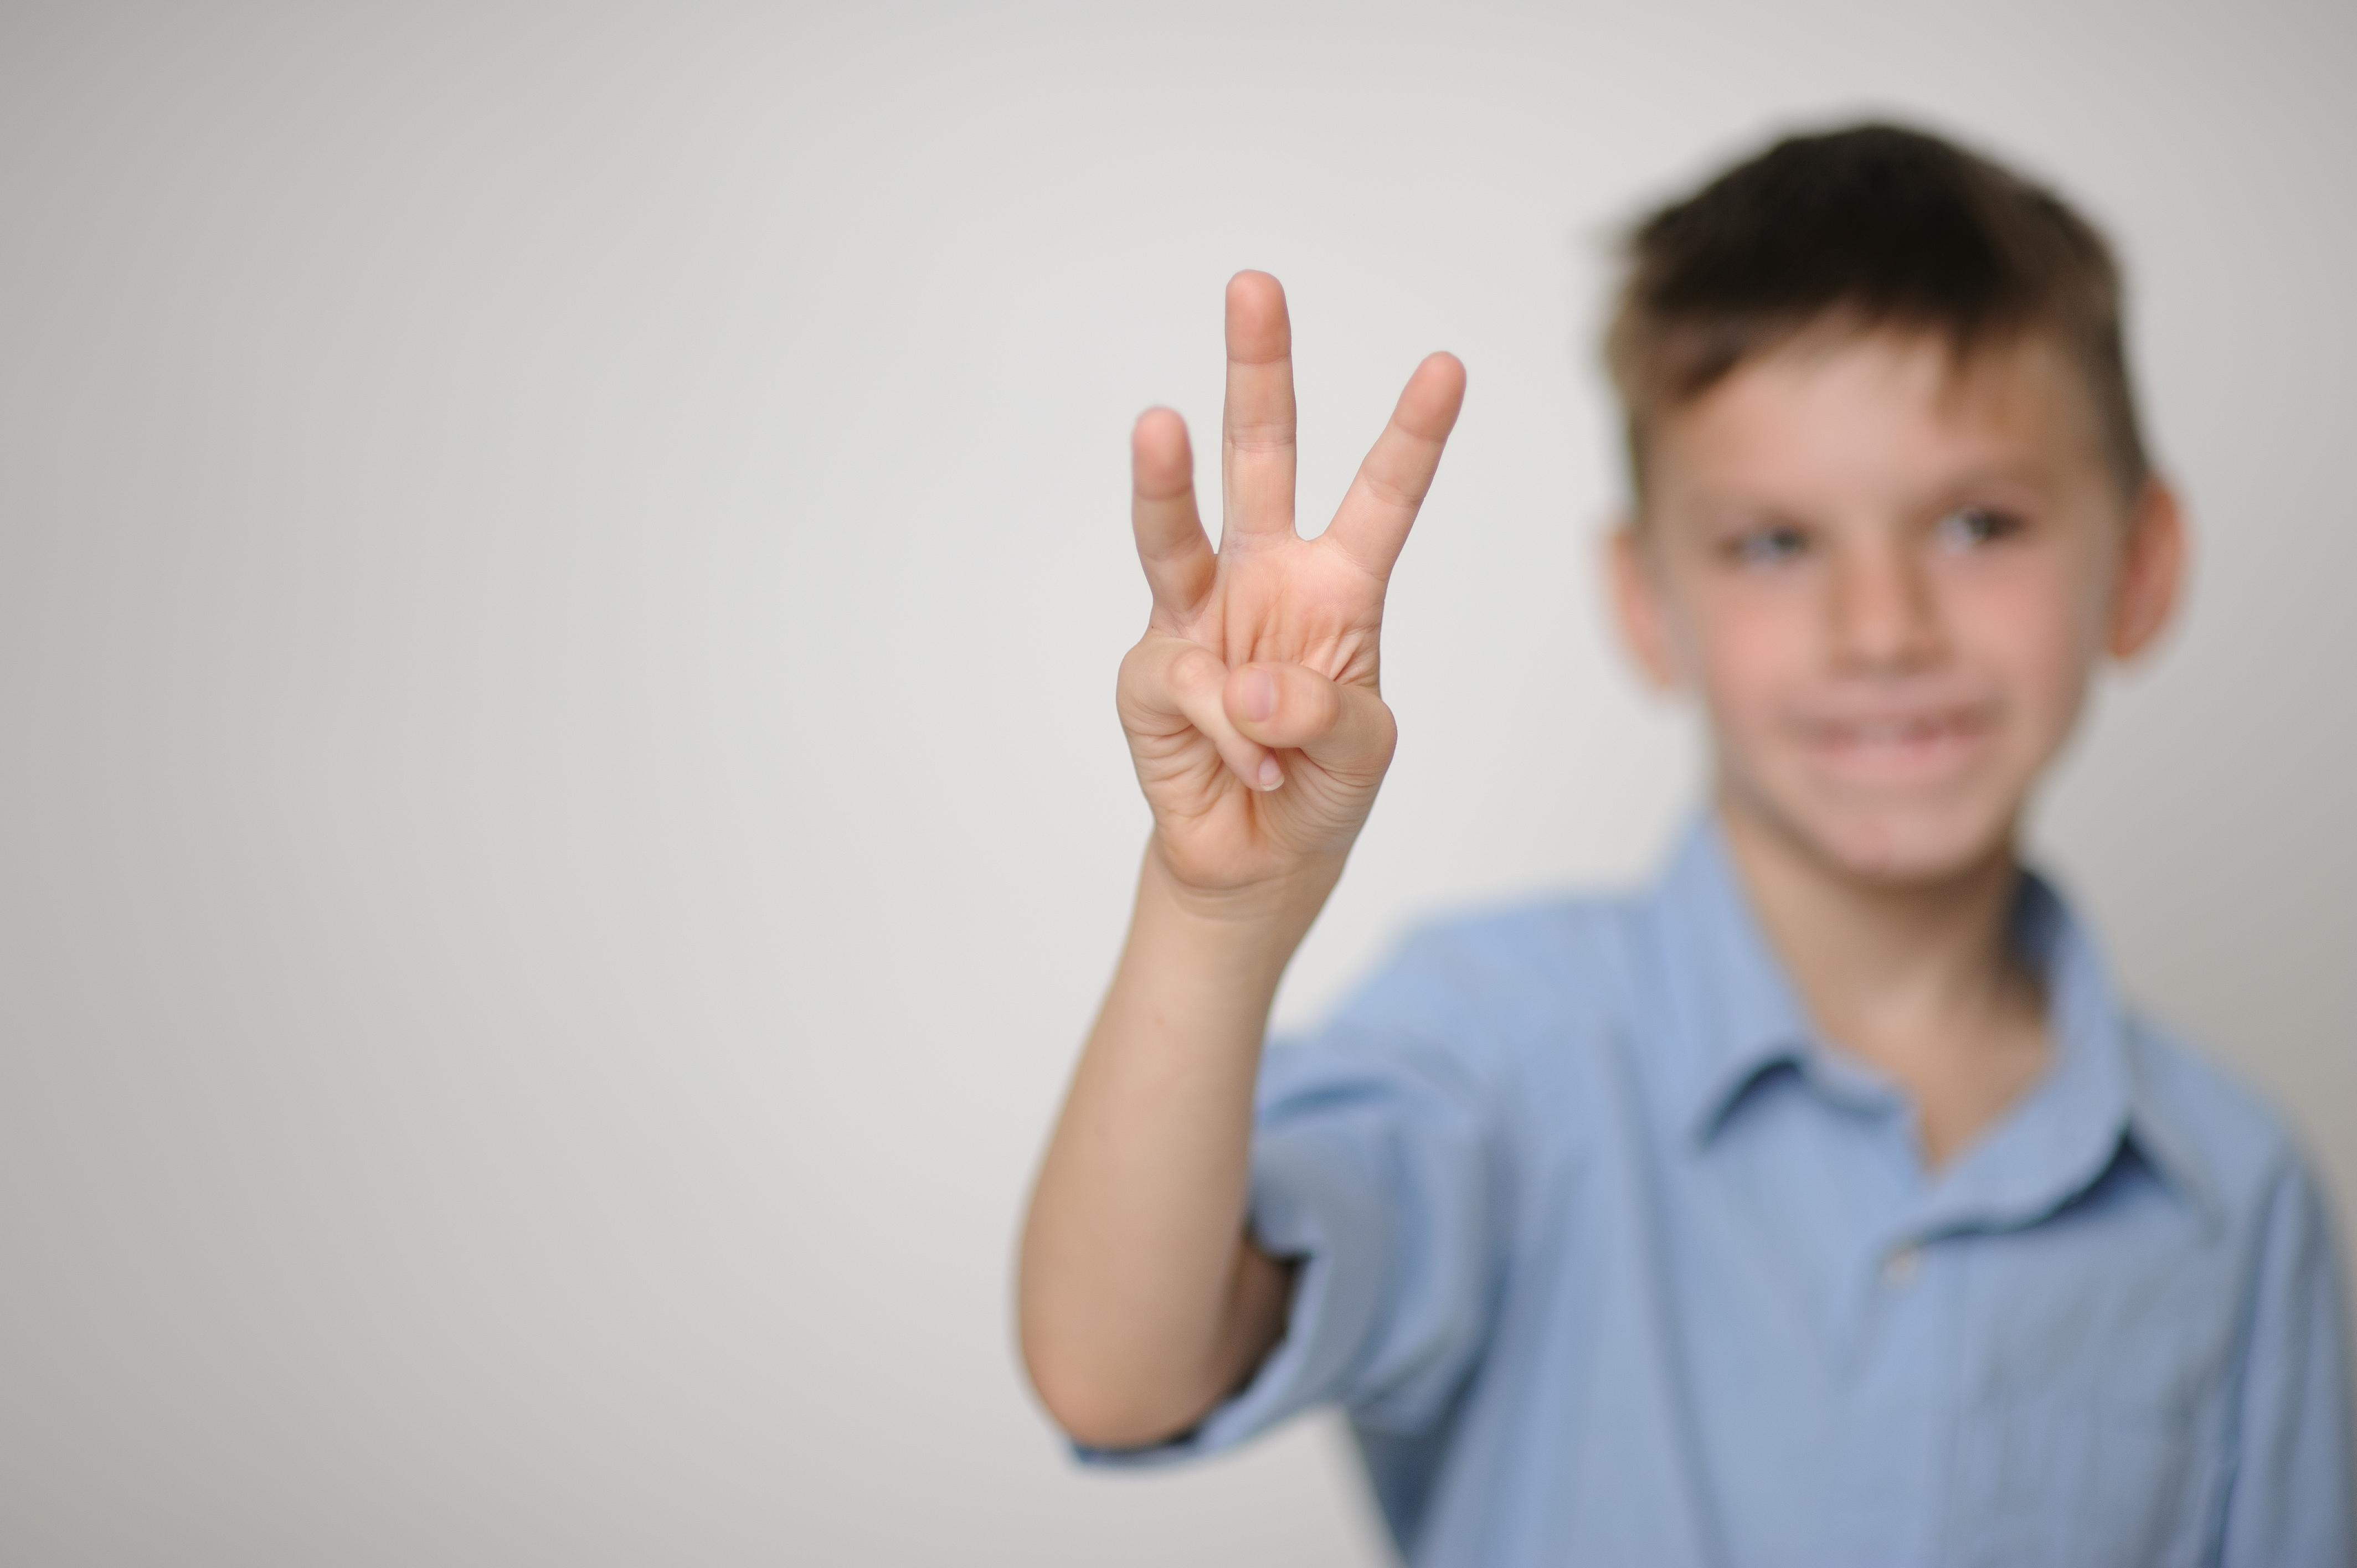 Trẻ em dễ dàng học đếm qua bài hát "How many fingers"